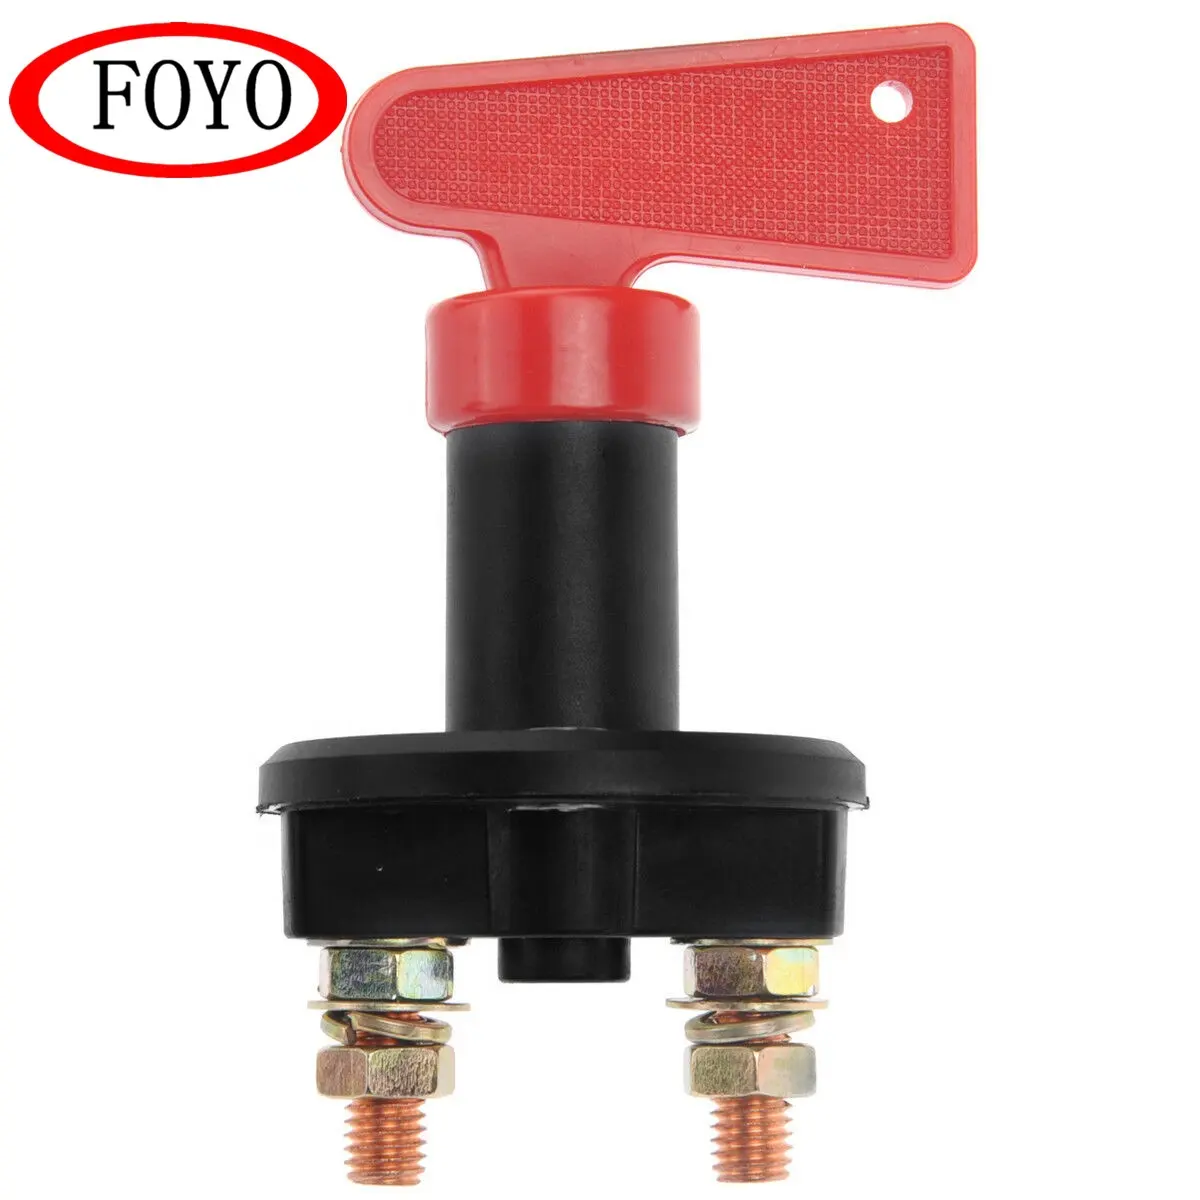 Foyo marka toptan 2 delik kapalı araba hızlı pil anahtarı kesme anahtarı için tekne ve kamyon